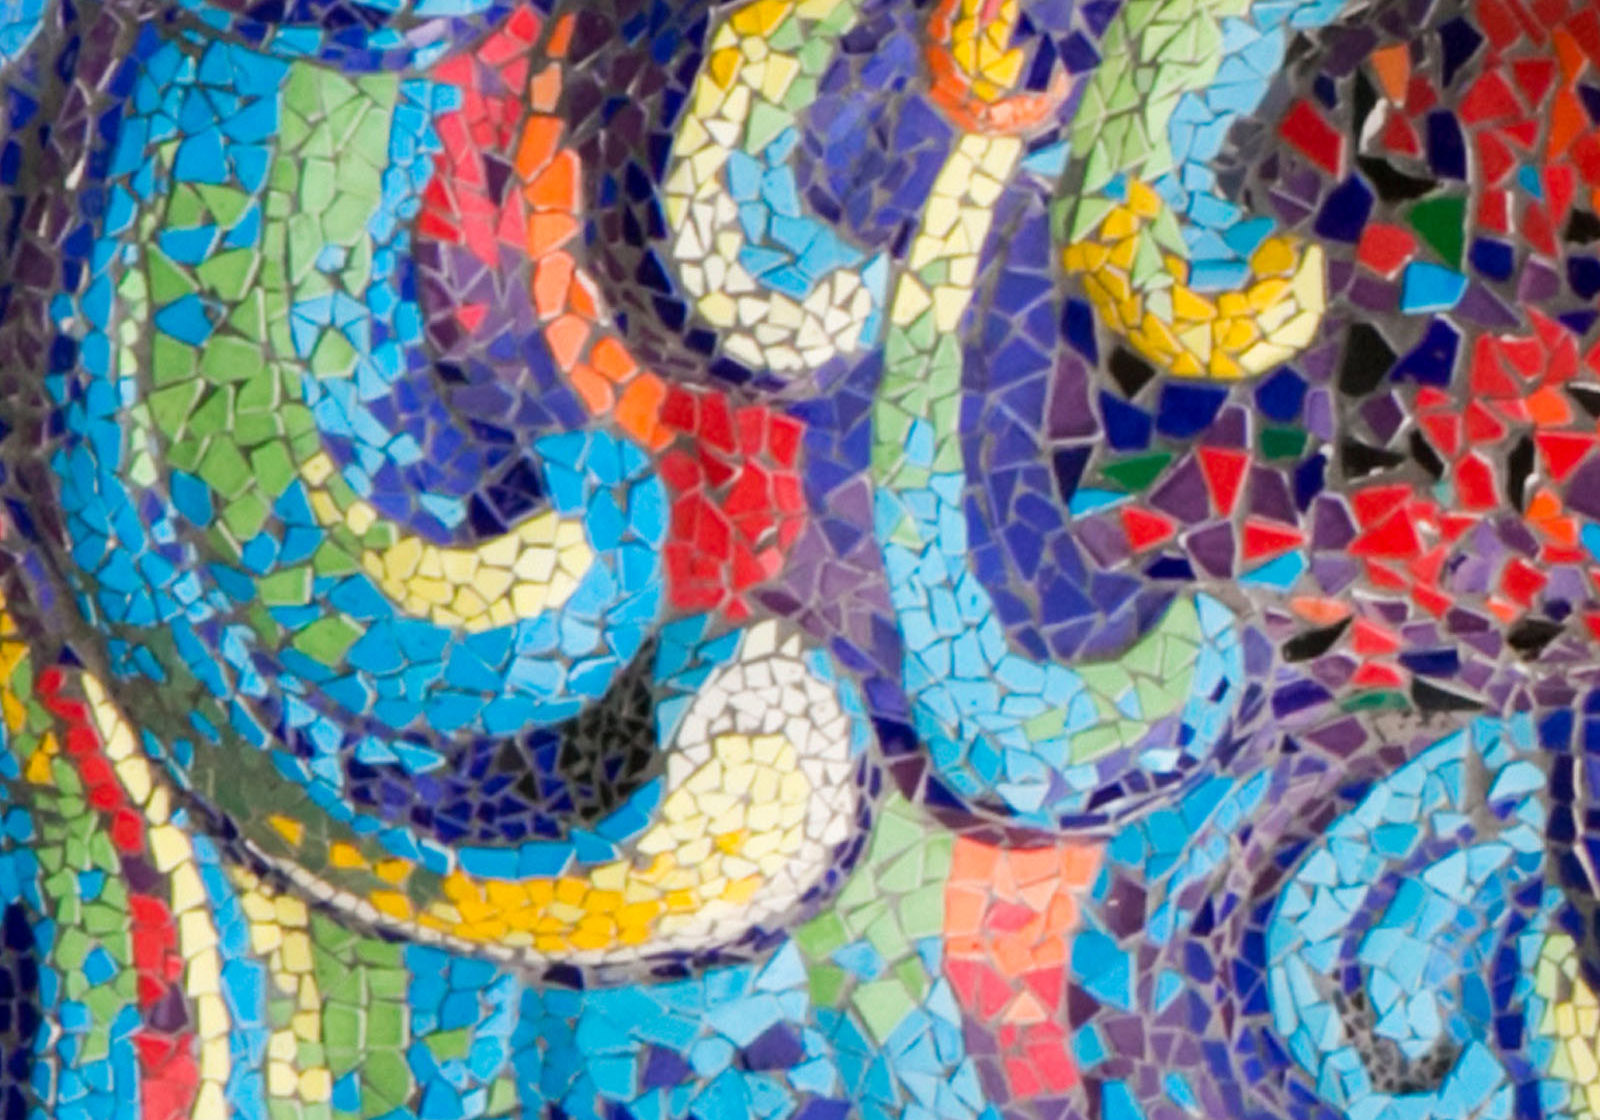 Tiled mosaic pattern